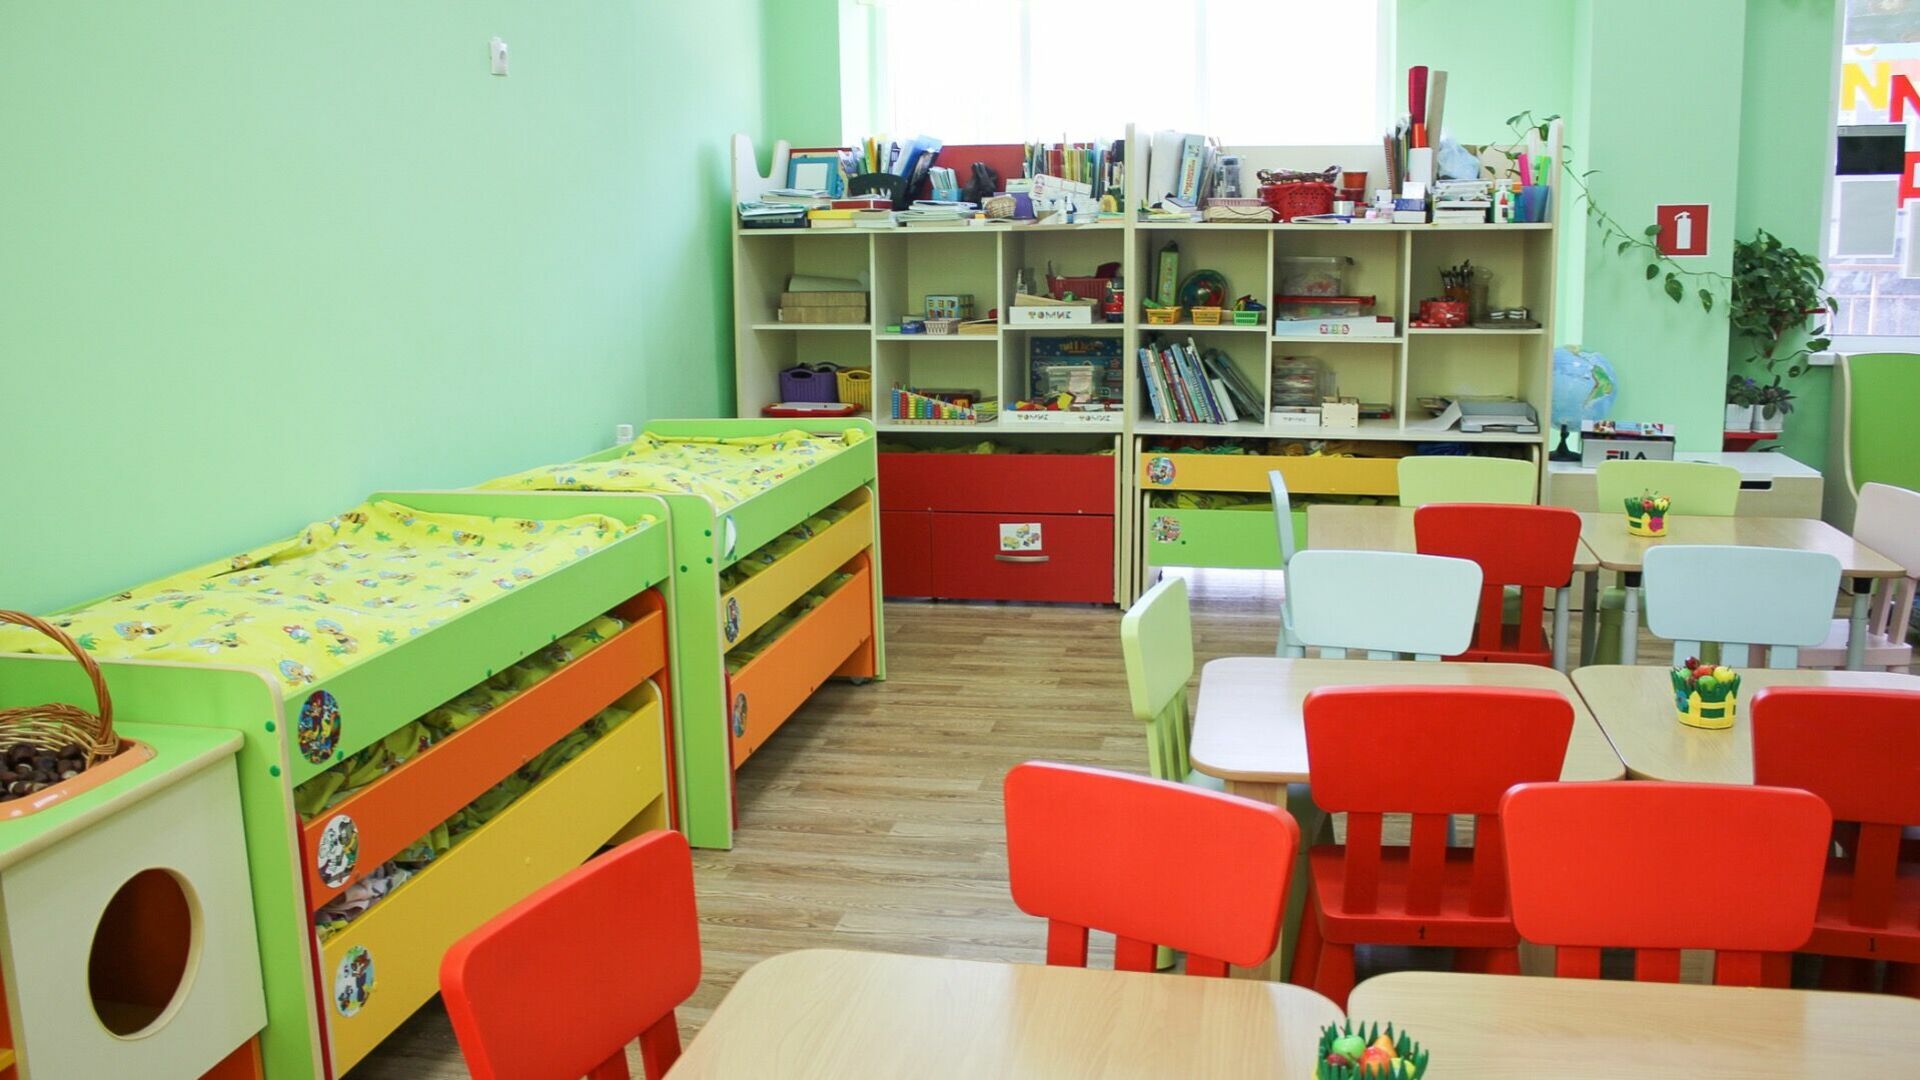 Детский сад продается в Челябинске за 6,5 млн рублей